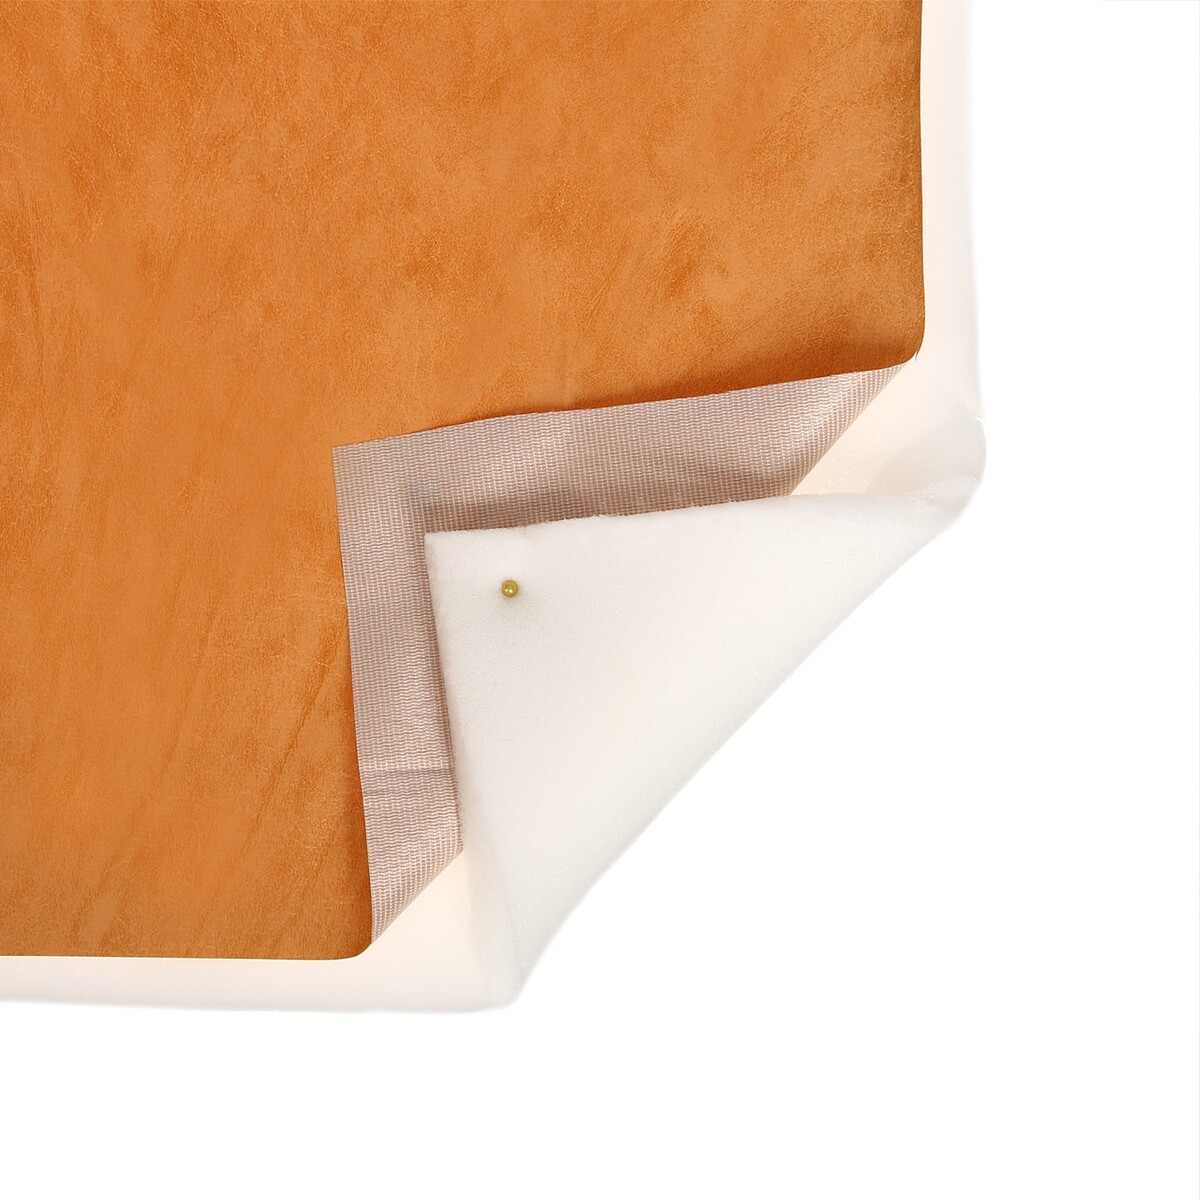 Комплект для перетяжки мебели, 100 × 100 см: иск.кожа, поролон 20 мм, бежевый